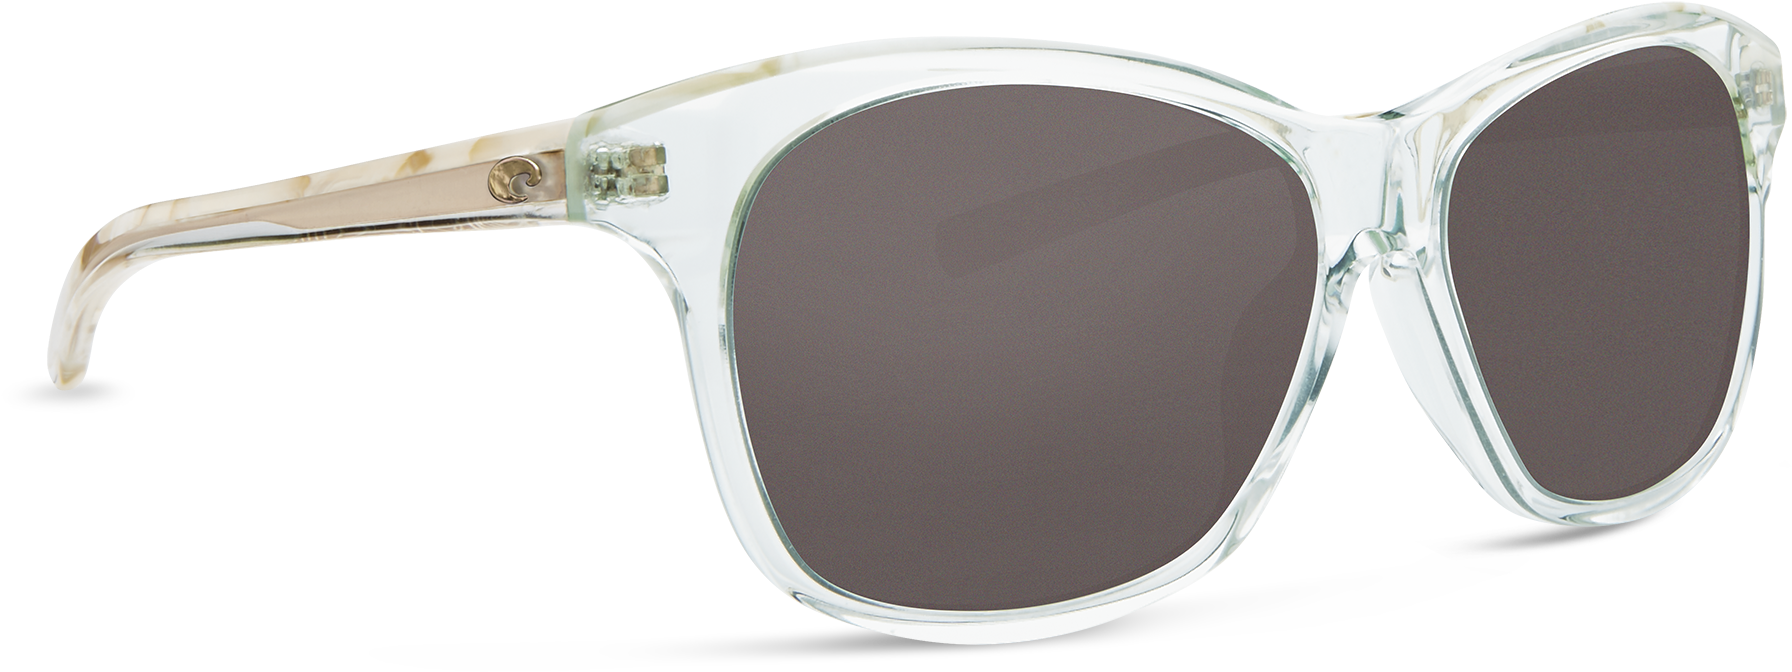 Costa Del Mar Sarasota Sunglasses In Shiny Seafoam - Costa Del Mar Sarasota (2000x1000), Png Download